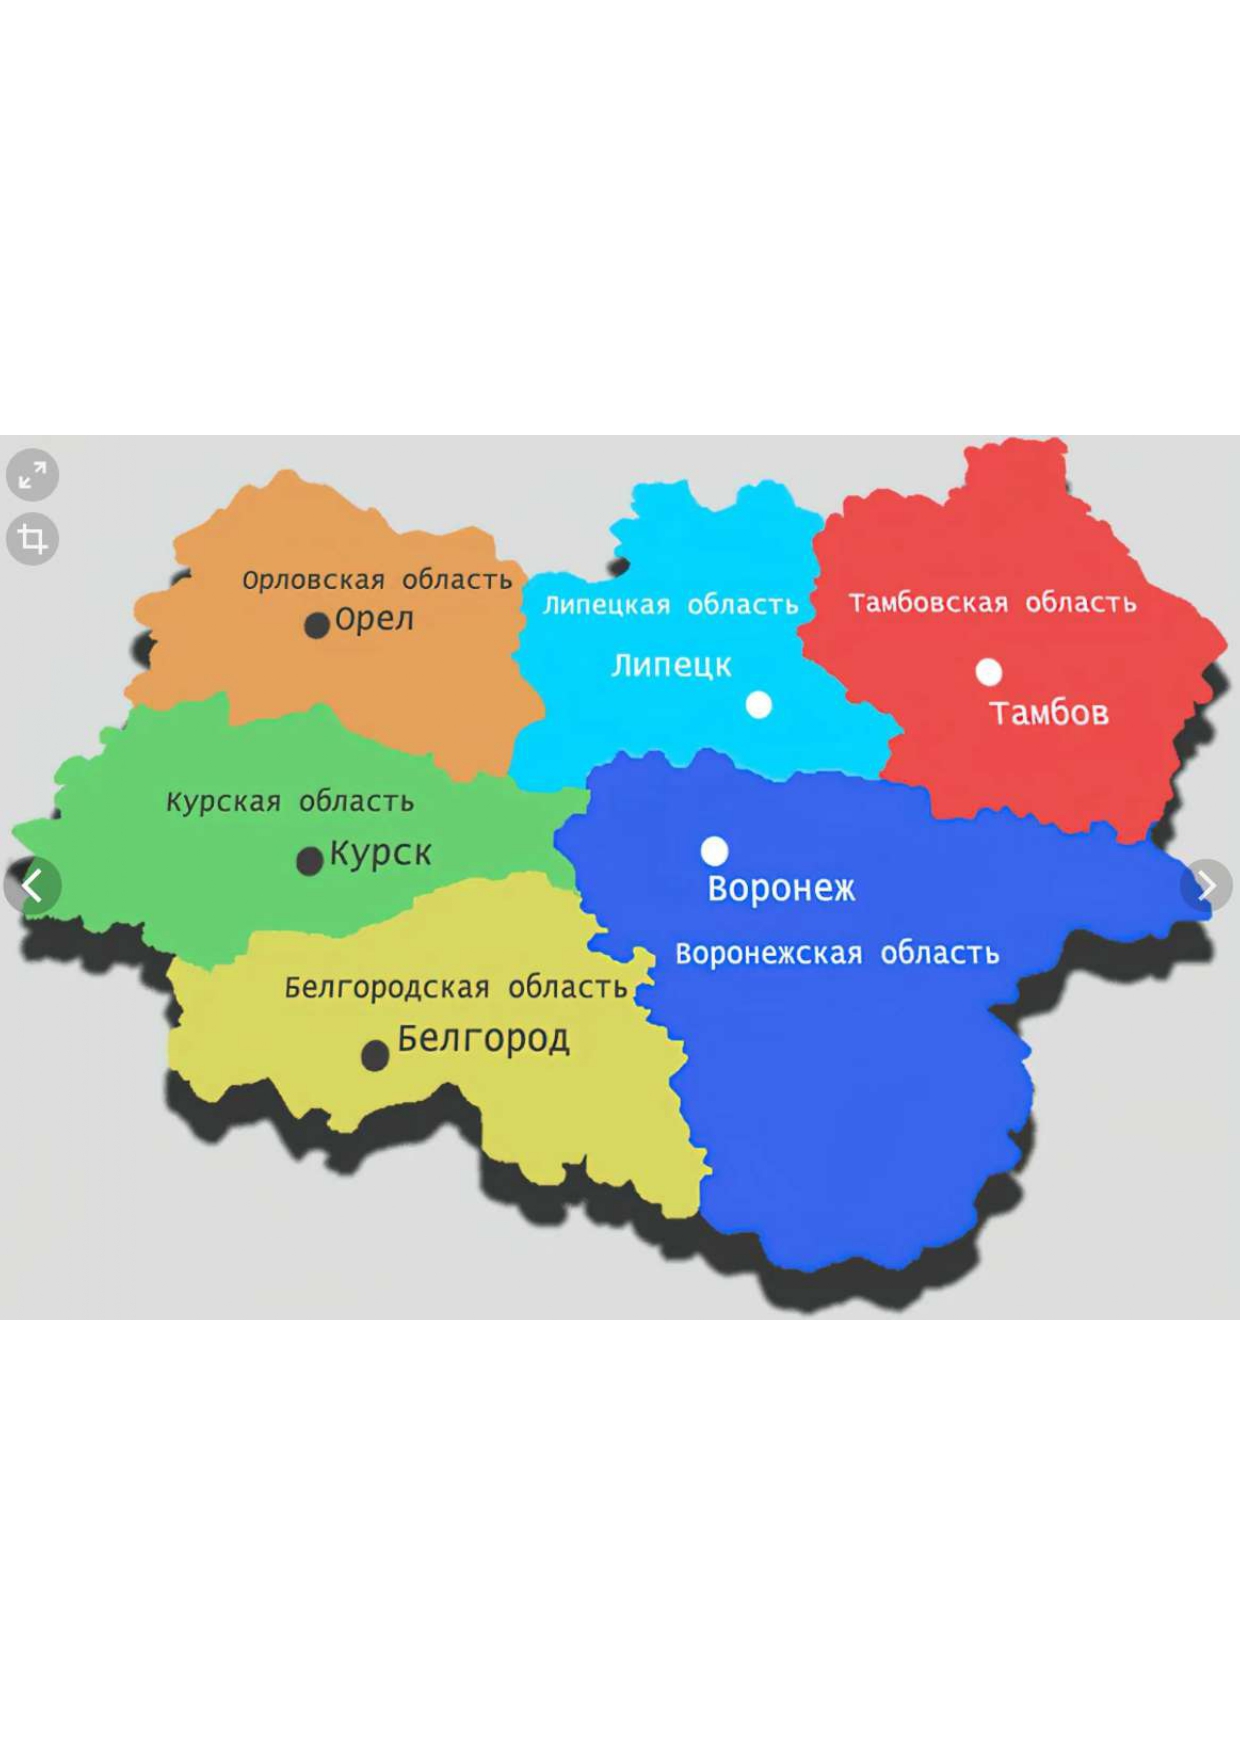 Адрес черноземье. Карта центрального Черноземья. Регионы Черноземья. Карта Черноземья по областям с городами. Карта Черноземья России с областями и городами.